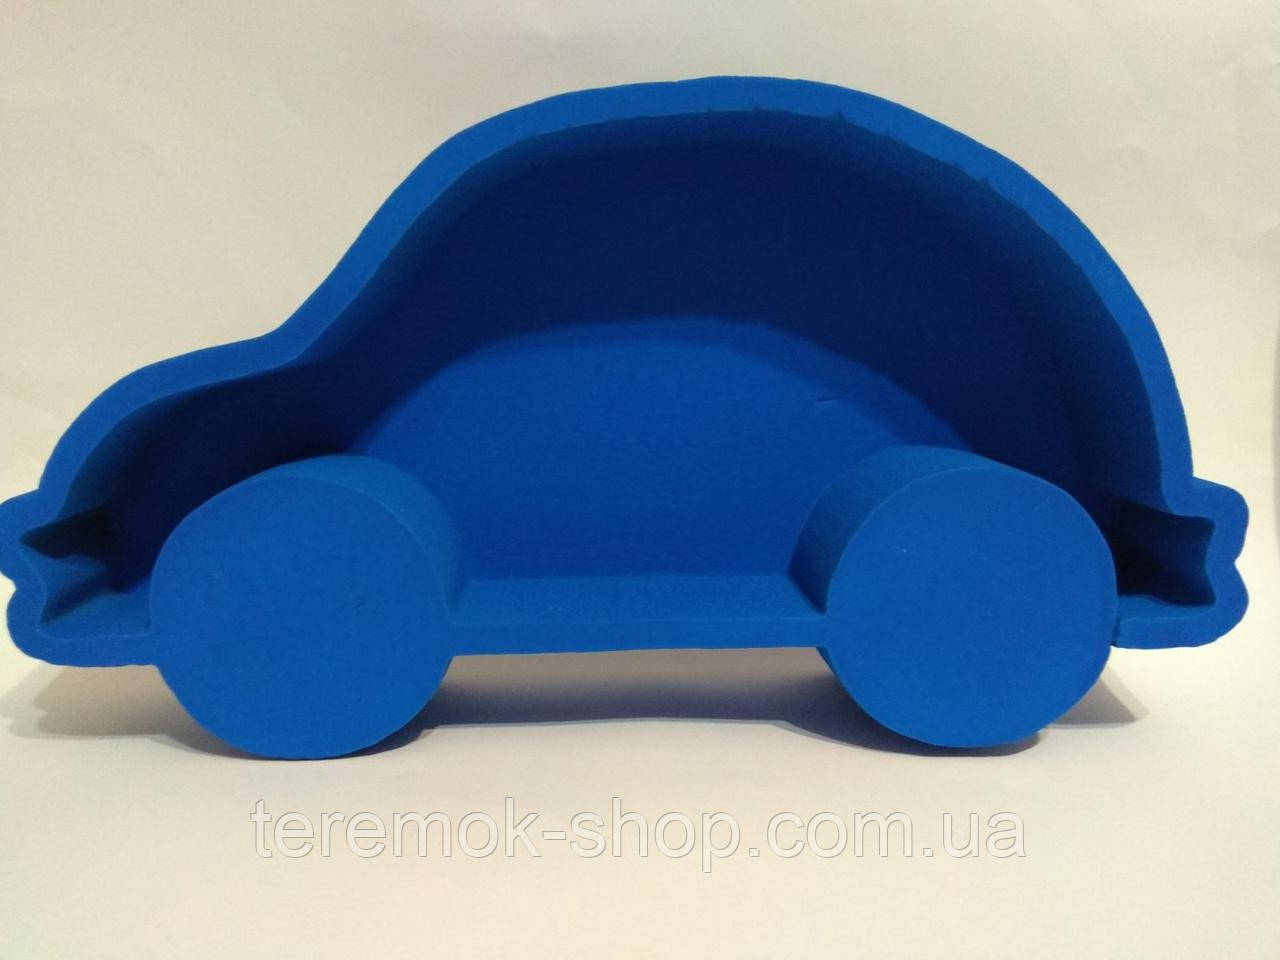 Подарункова скляна коробка пенобокс з пінопласту ( фарбована) синя машина 38 х21 см